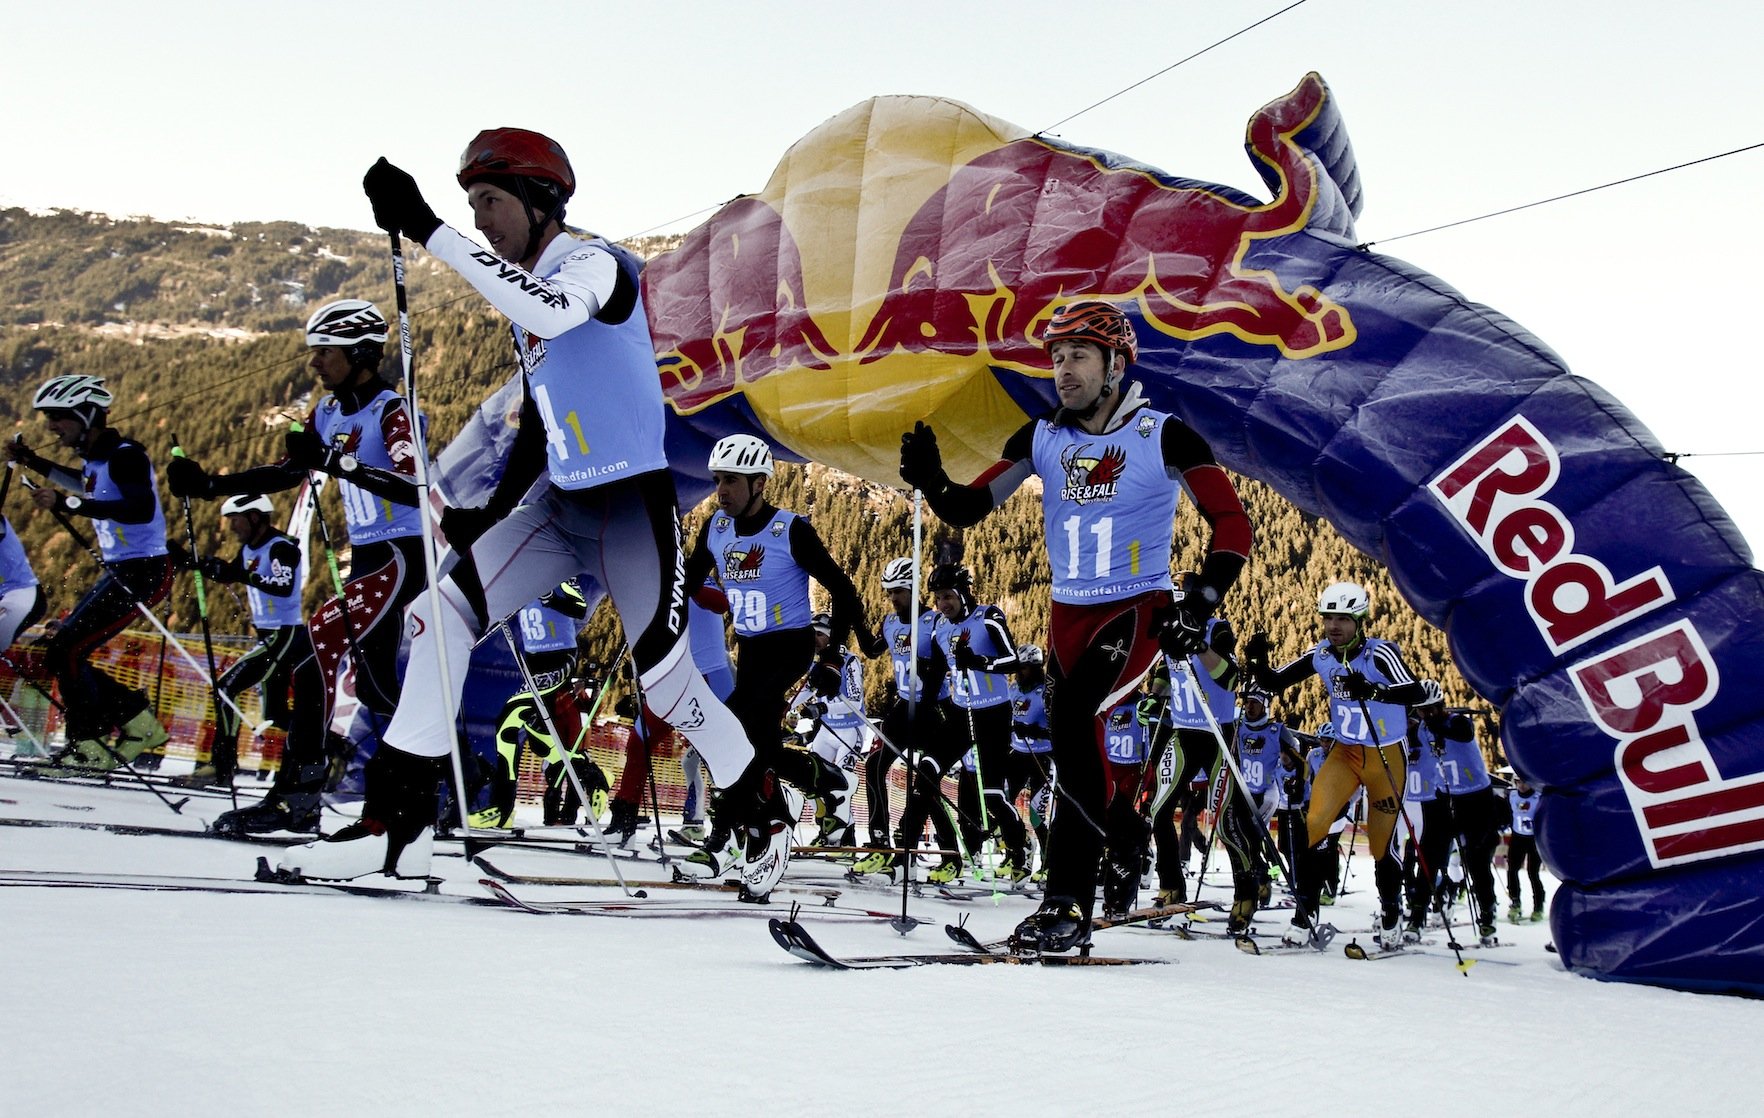 Event – Mayrhofen-Hippach: RISE&FALL – beim härtesten Staffelrennen des Winters zählt nur Vollgas